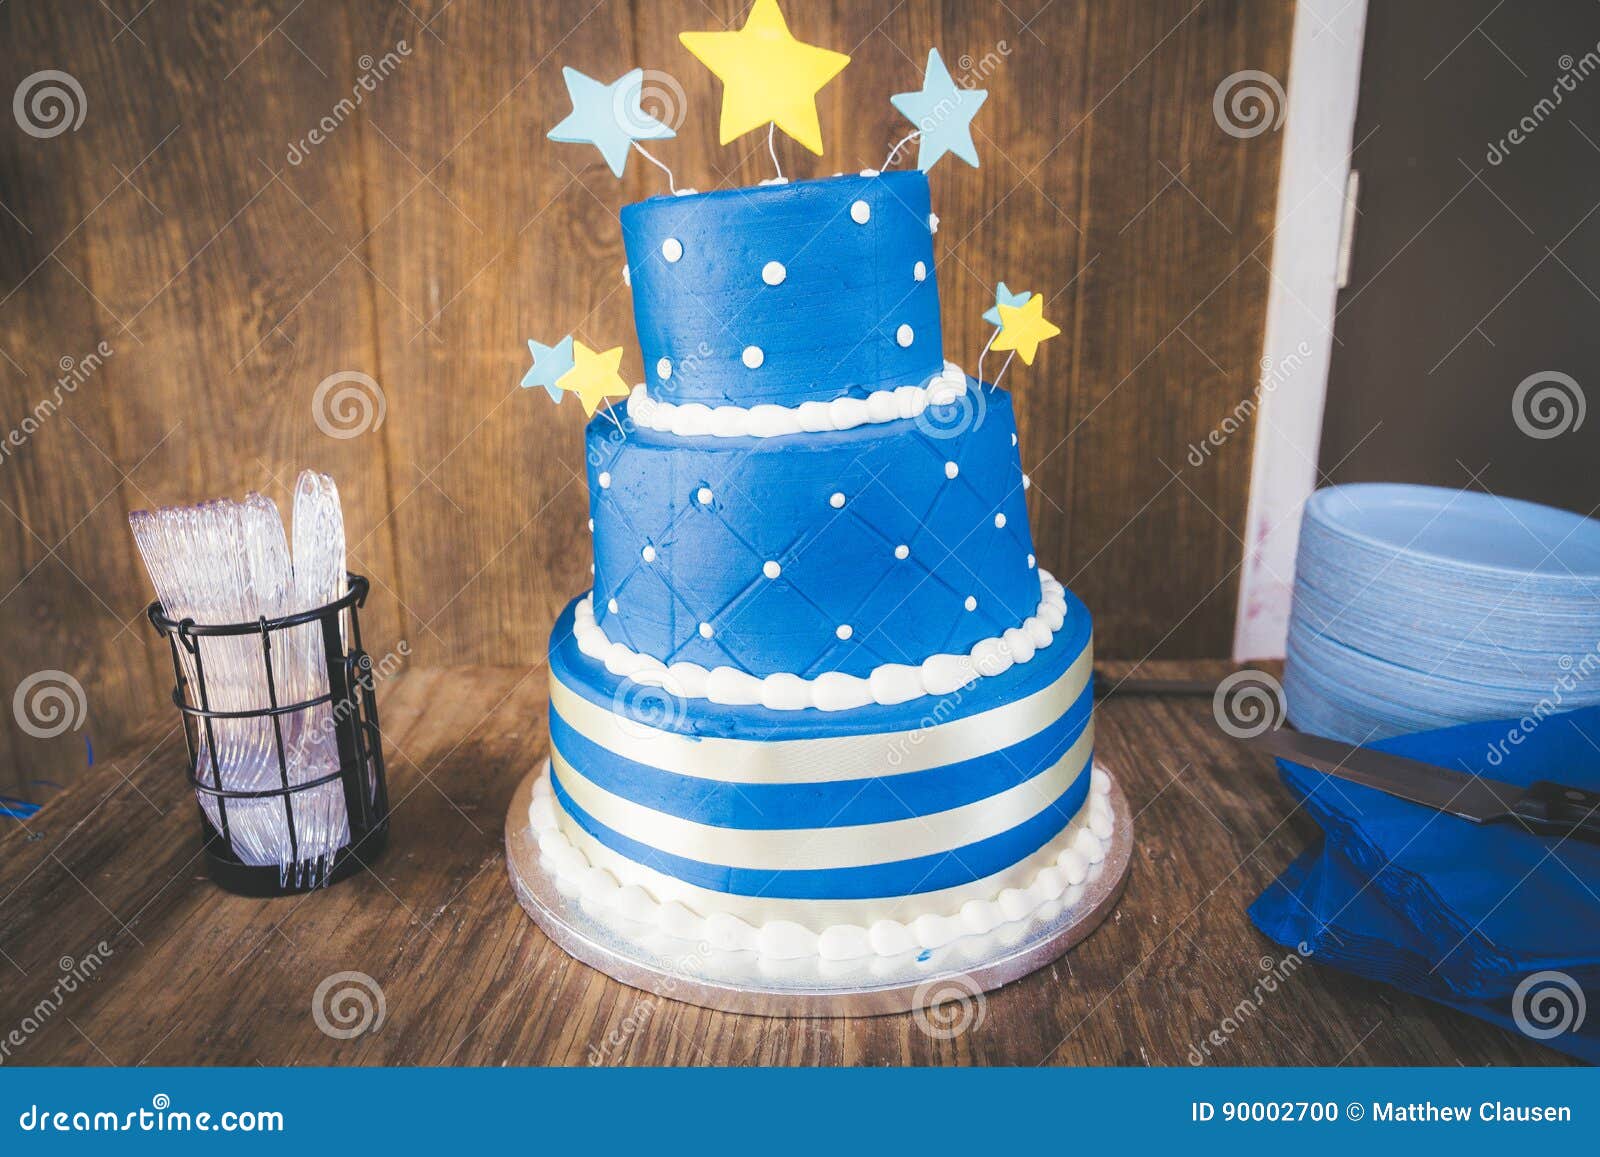 Joyeux anniversaire gâteau étoiles